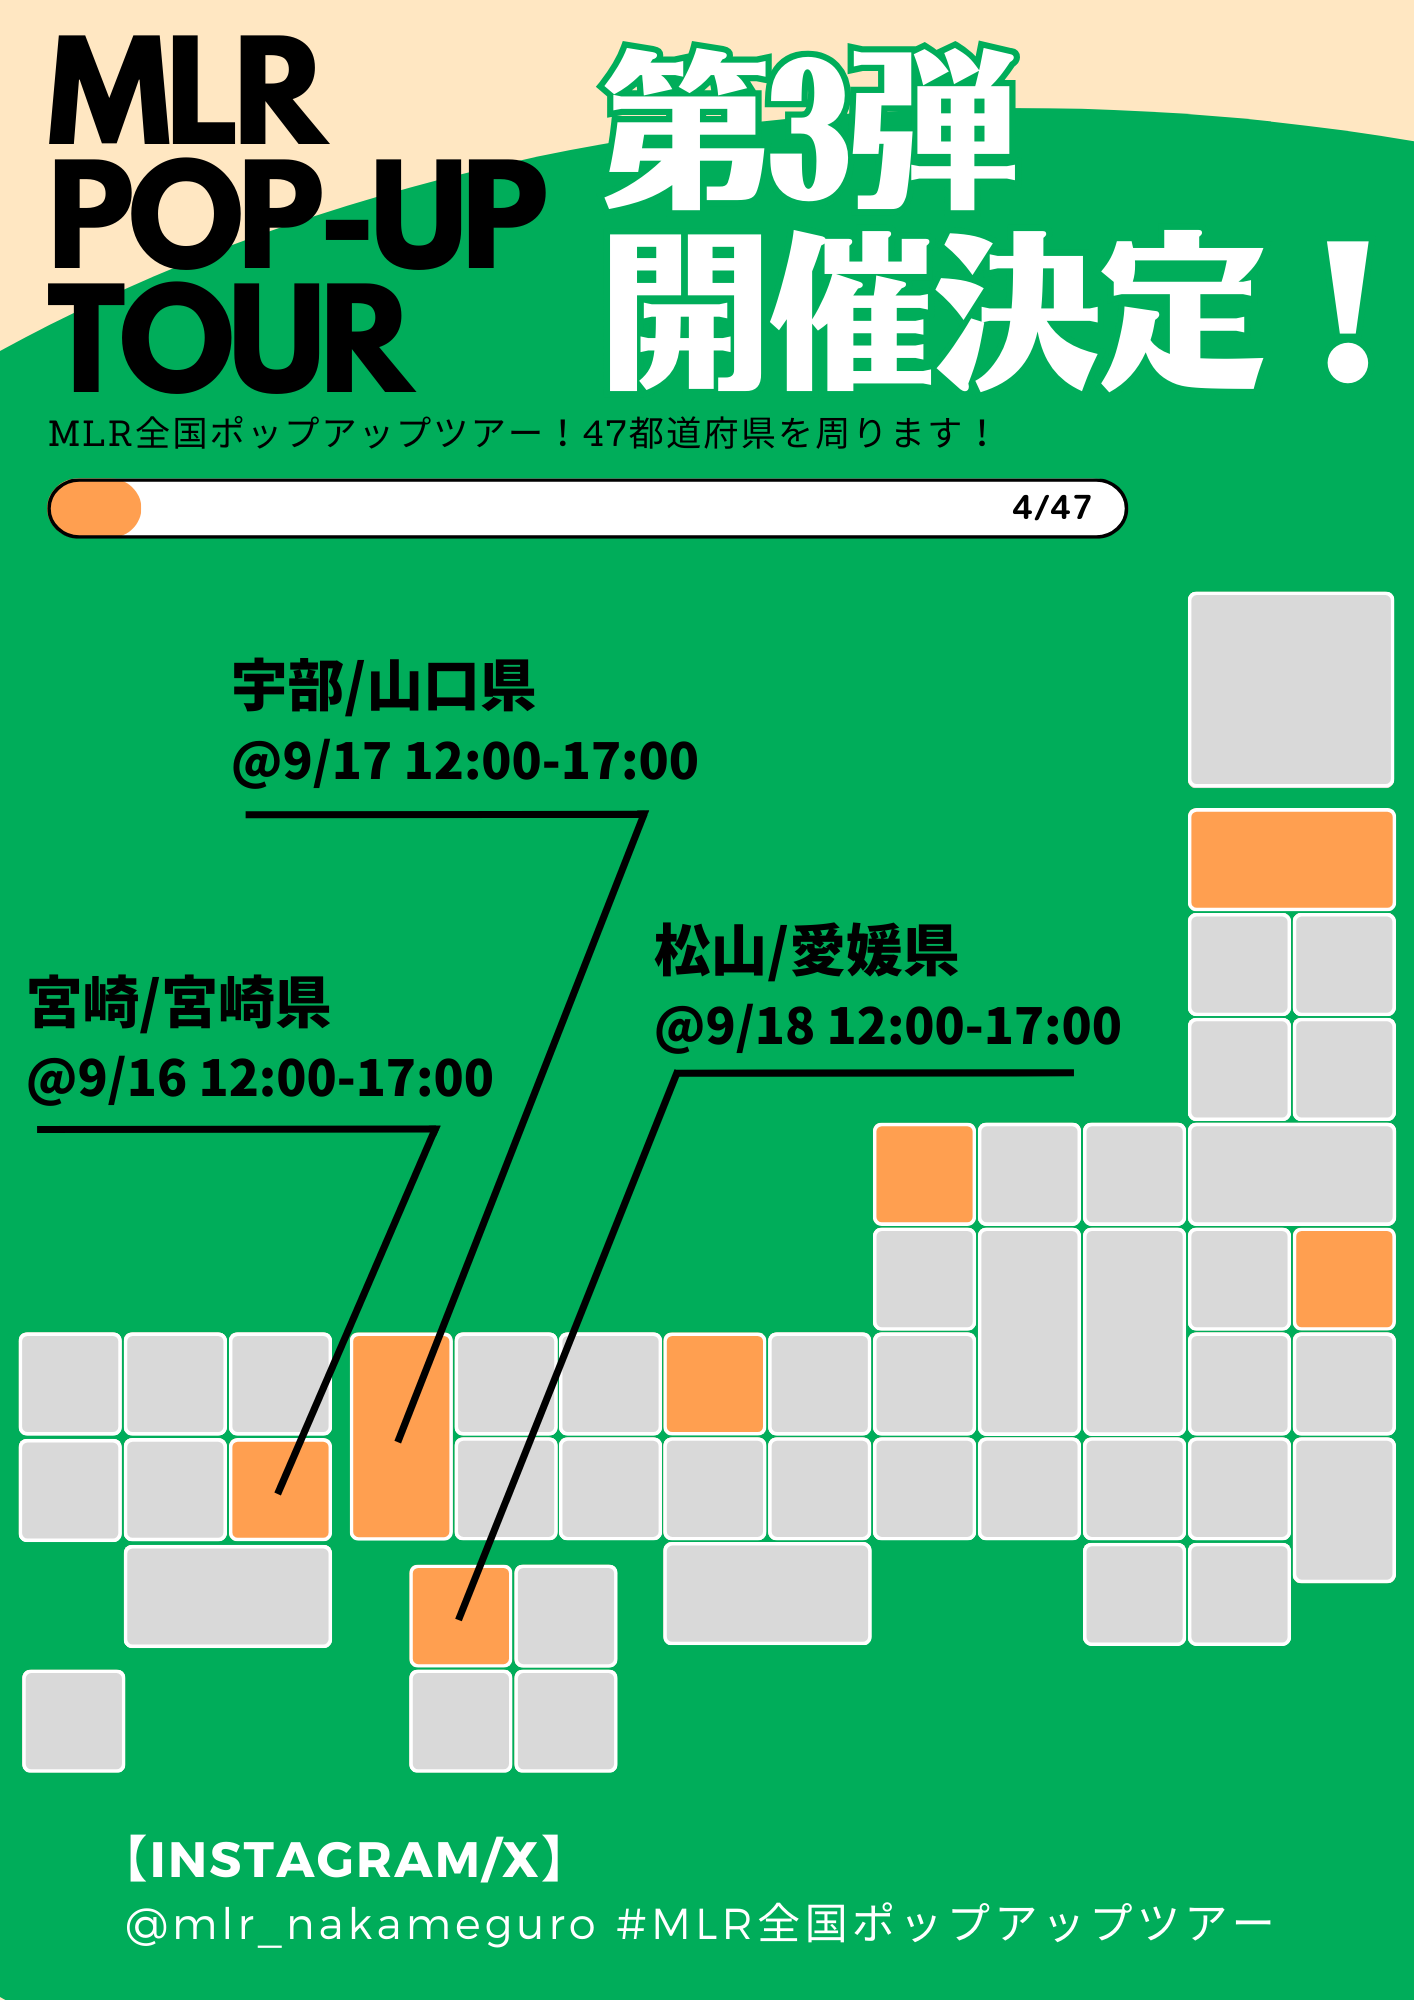 9/16(土)、17(日)、18(月･祝) 宮崎&山口&愛媛出張イベント開催！